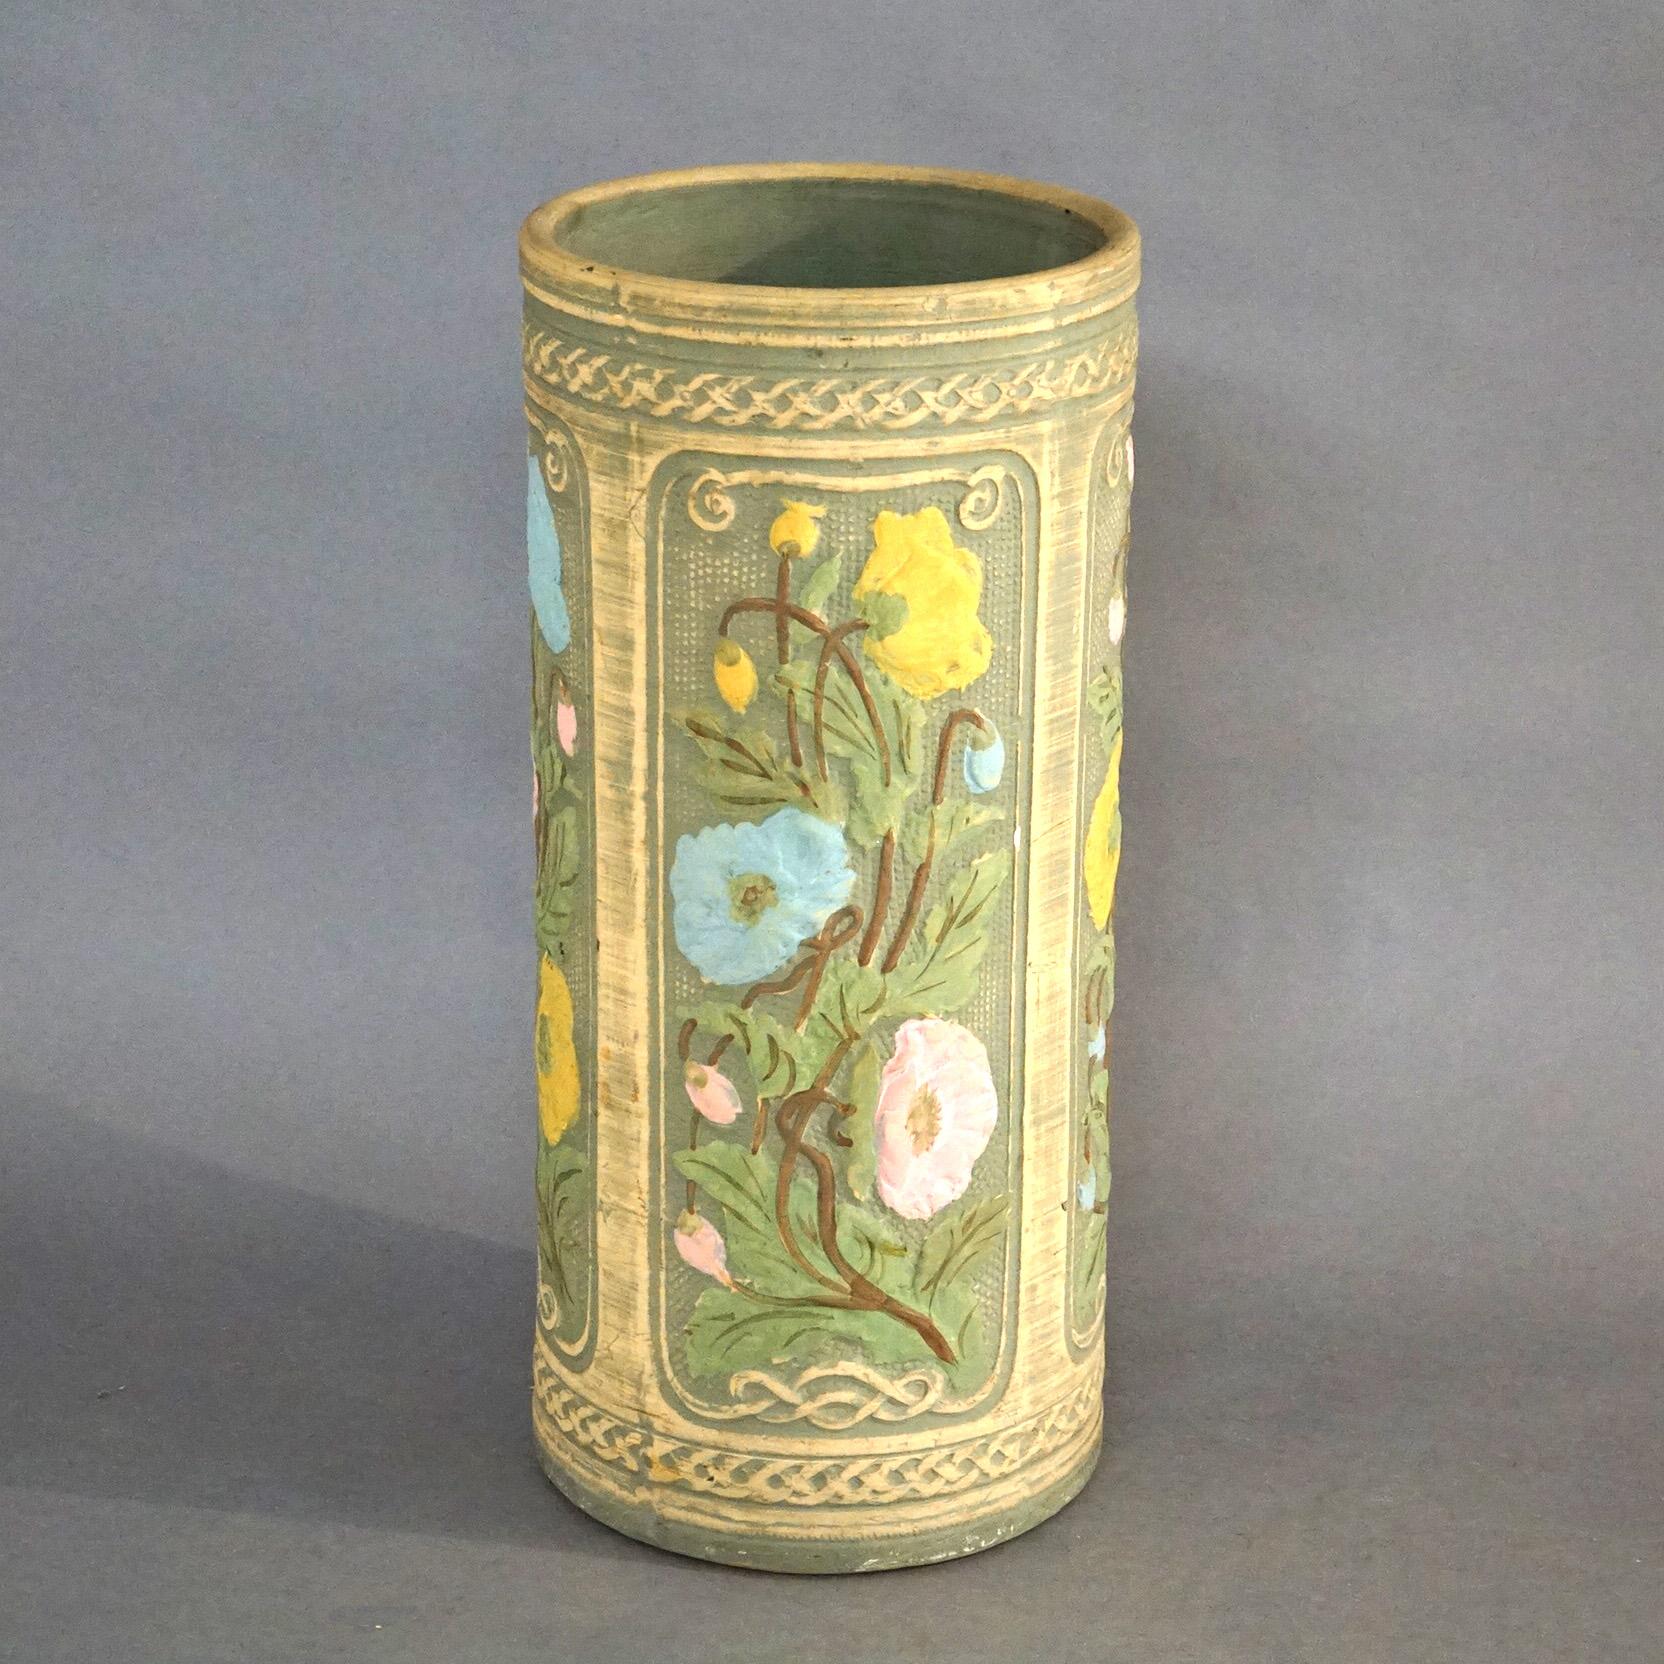 Porte-parapluie ancien de style Arts and Crafts Weller Robinson Ransbottom, de forme cylindrique en poterie d'art, avec des panneaux ornés de fleurs de pavot, vers 1920.

Mesures - 22,25 